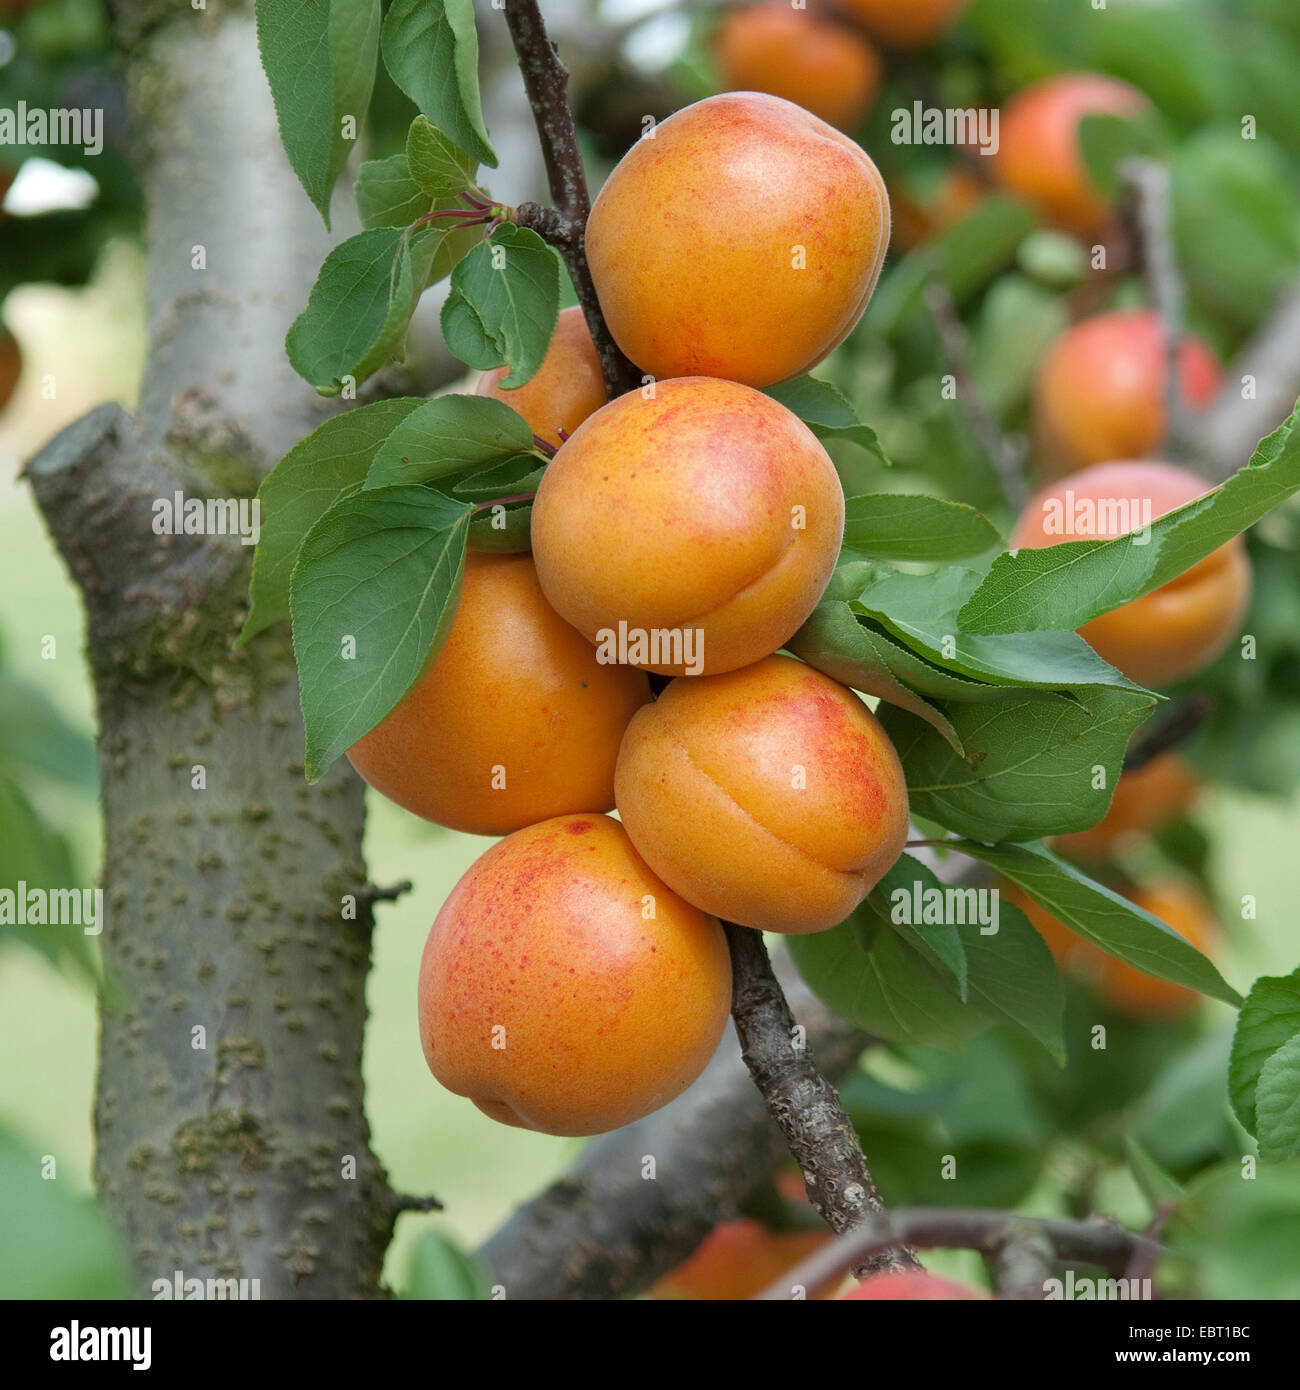 Aprikosenbaum (Prunus Armeniaca "Harlayne', Prunus Armeniaca Harlayne), Sorte Harlayne, Aprikosen auf einem Baum Stockfoto